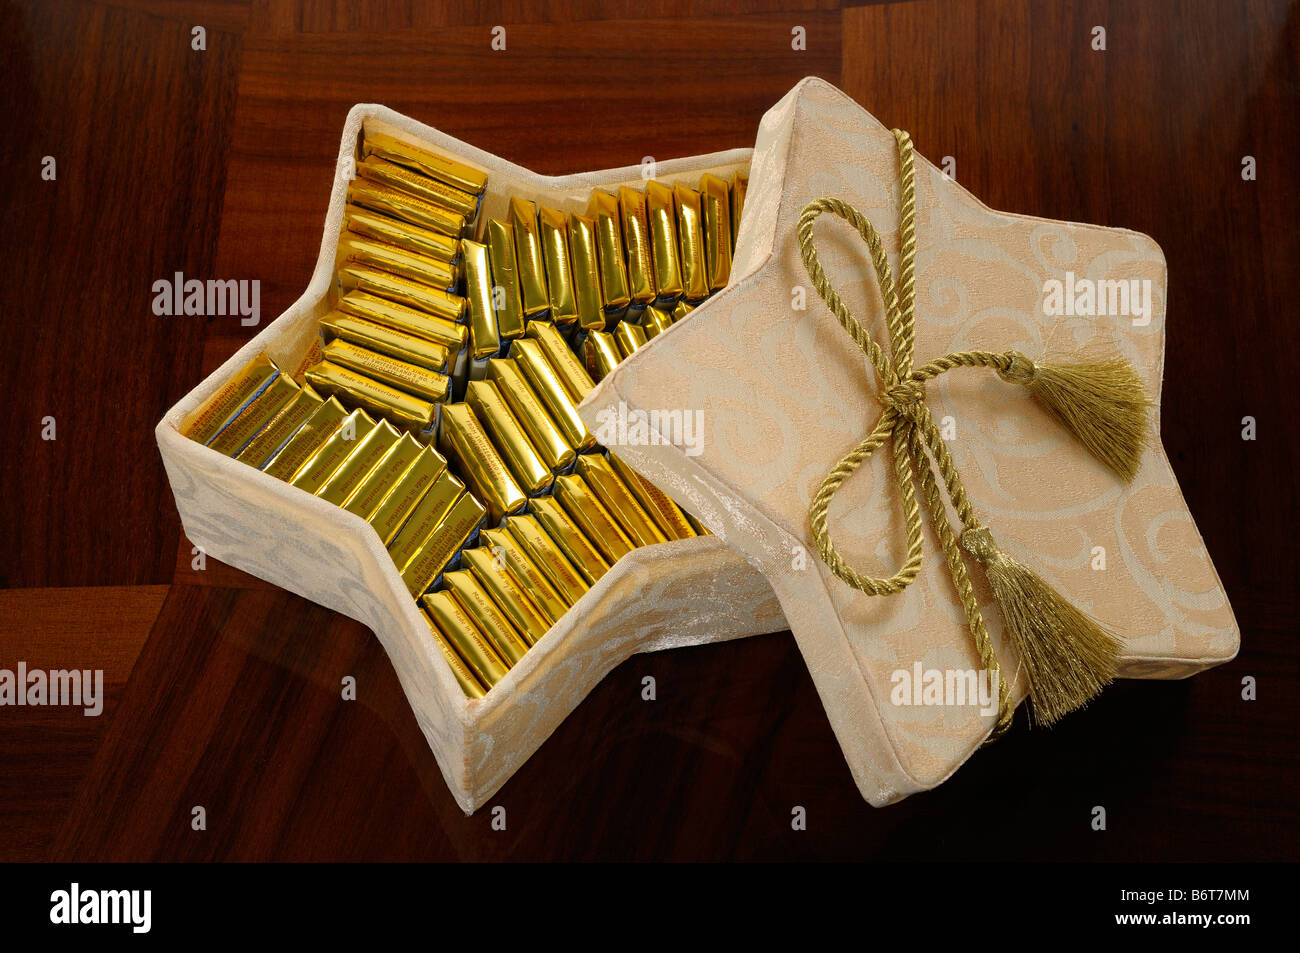 Barres d'or du chocolat suisse dans une boîte en forme d'étoile sur une table en bois Banque D'Images